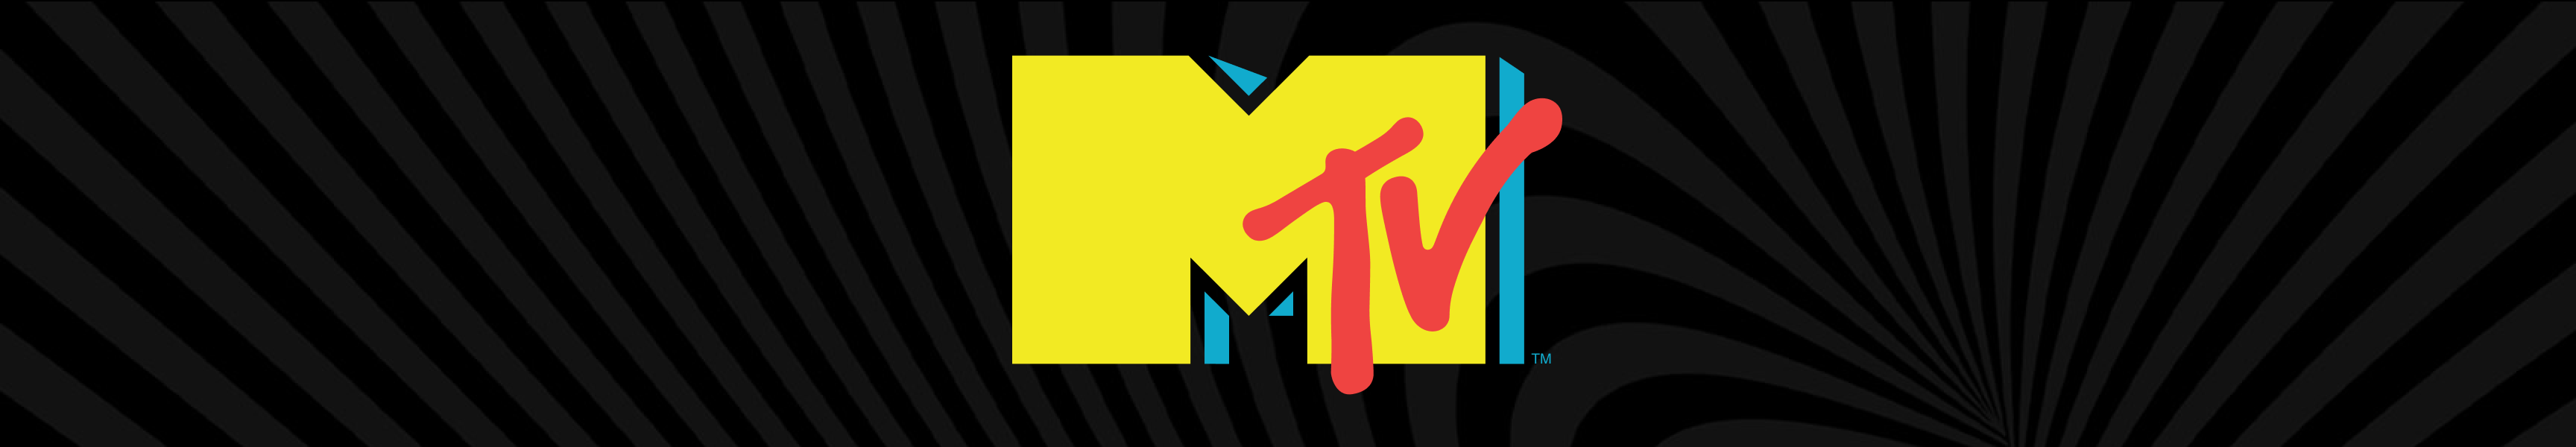 Accesorios de baño MTV